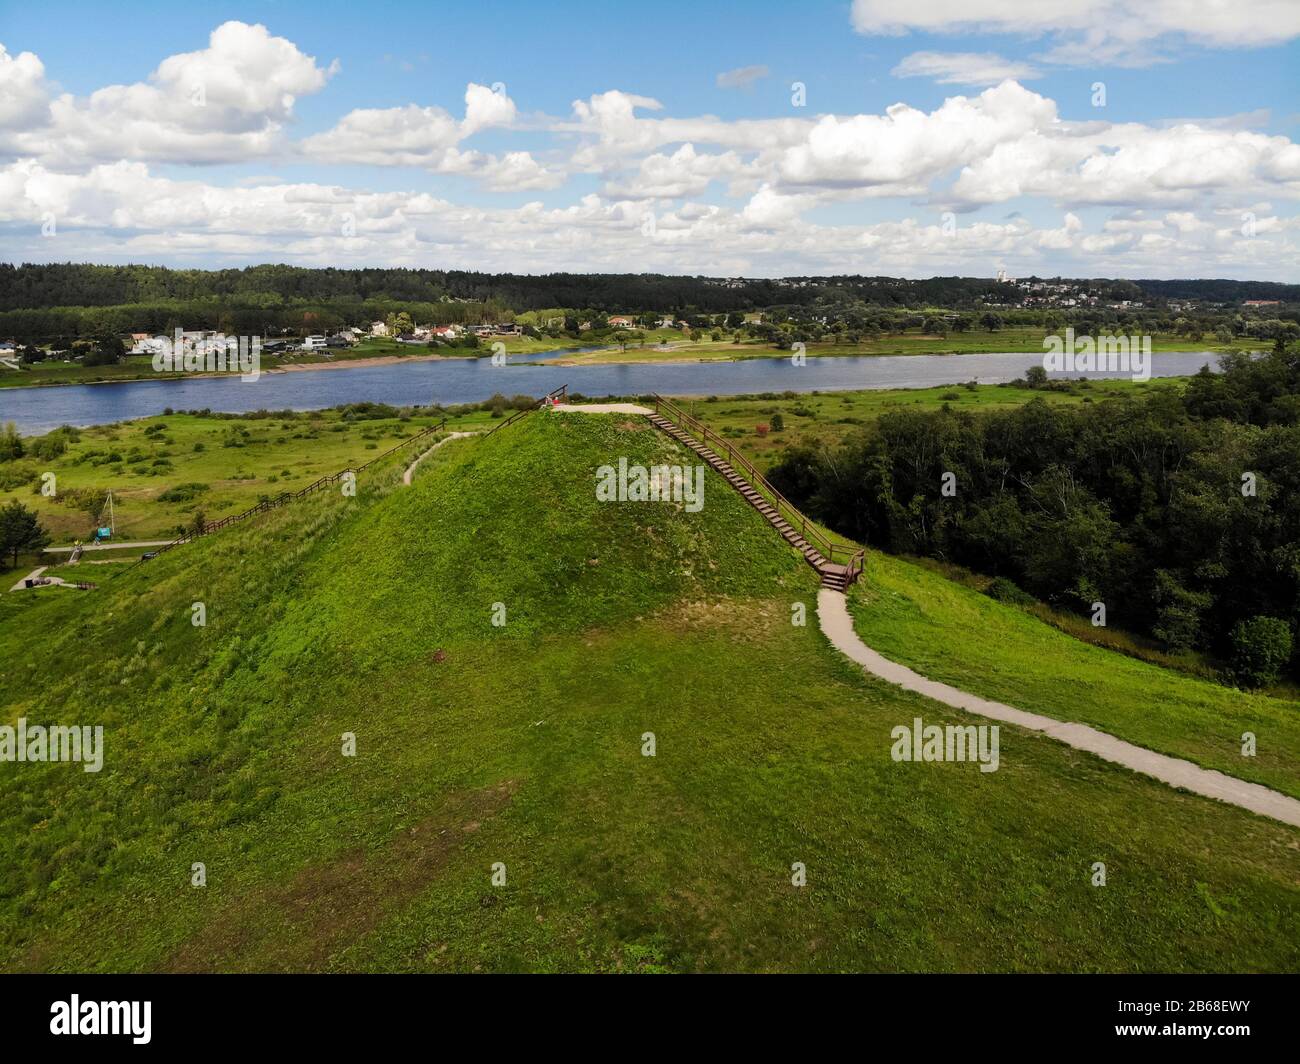 Historical Pypliai mound in Kacergine town, Lithuania. Aerial view Stock Photo